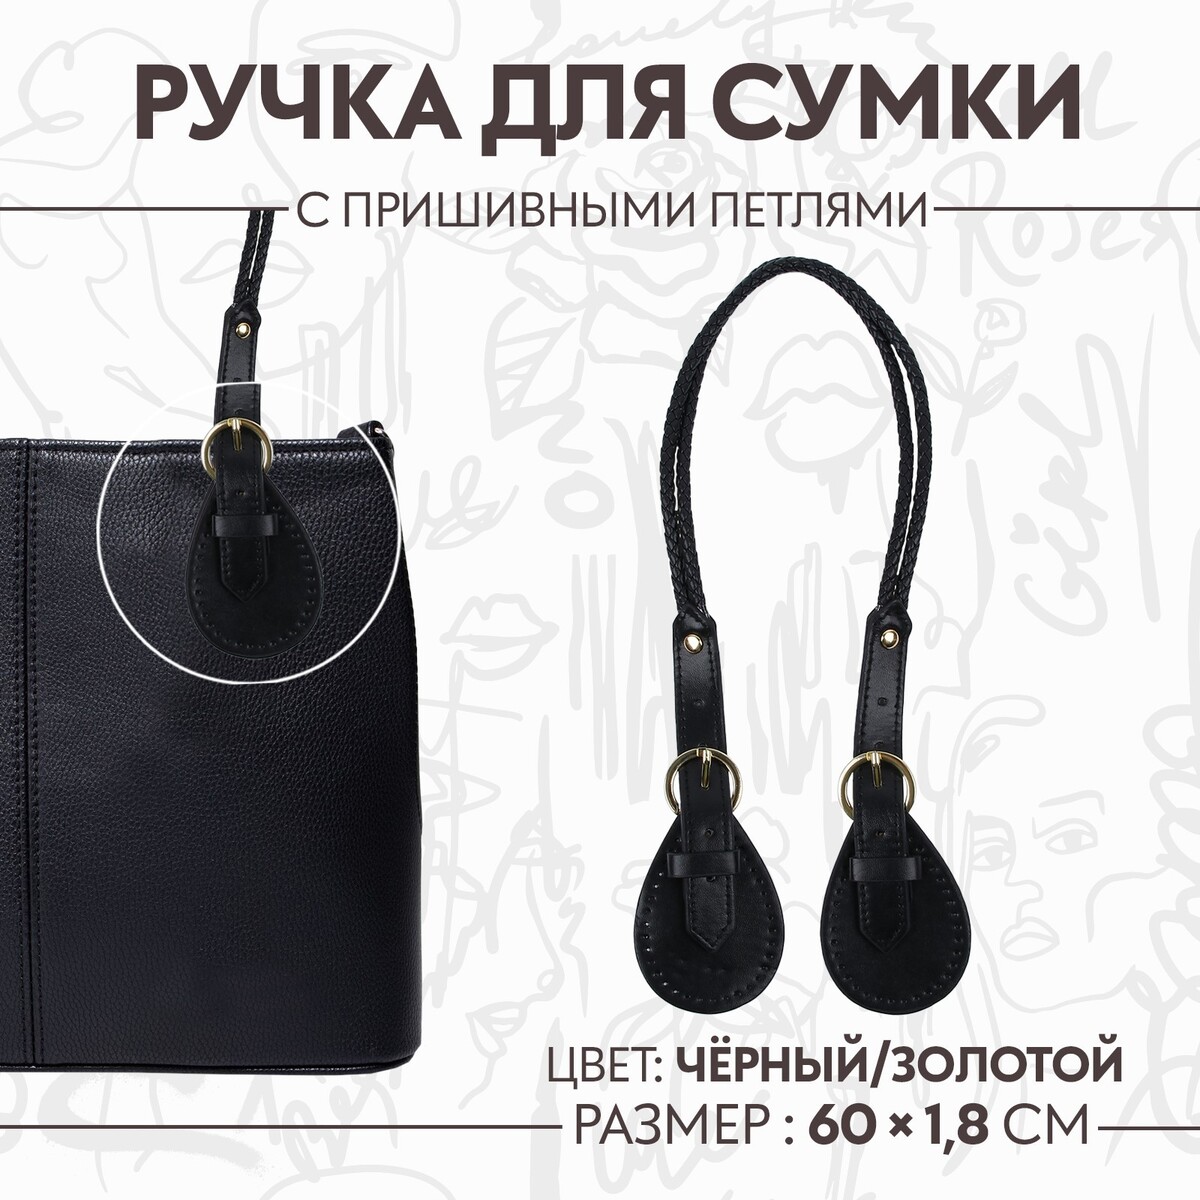 Ручка для сумки, шнуры, 60 × 1,8 см, с пришивными петлями 5,8 см, цвет черный/золотой